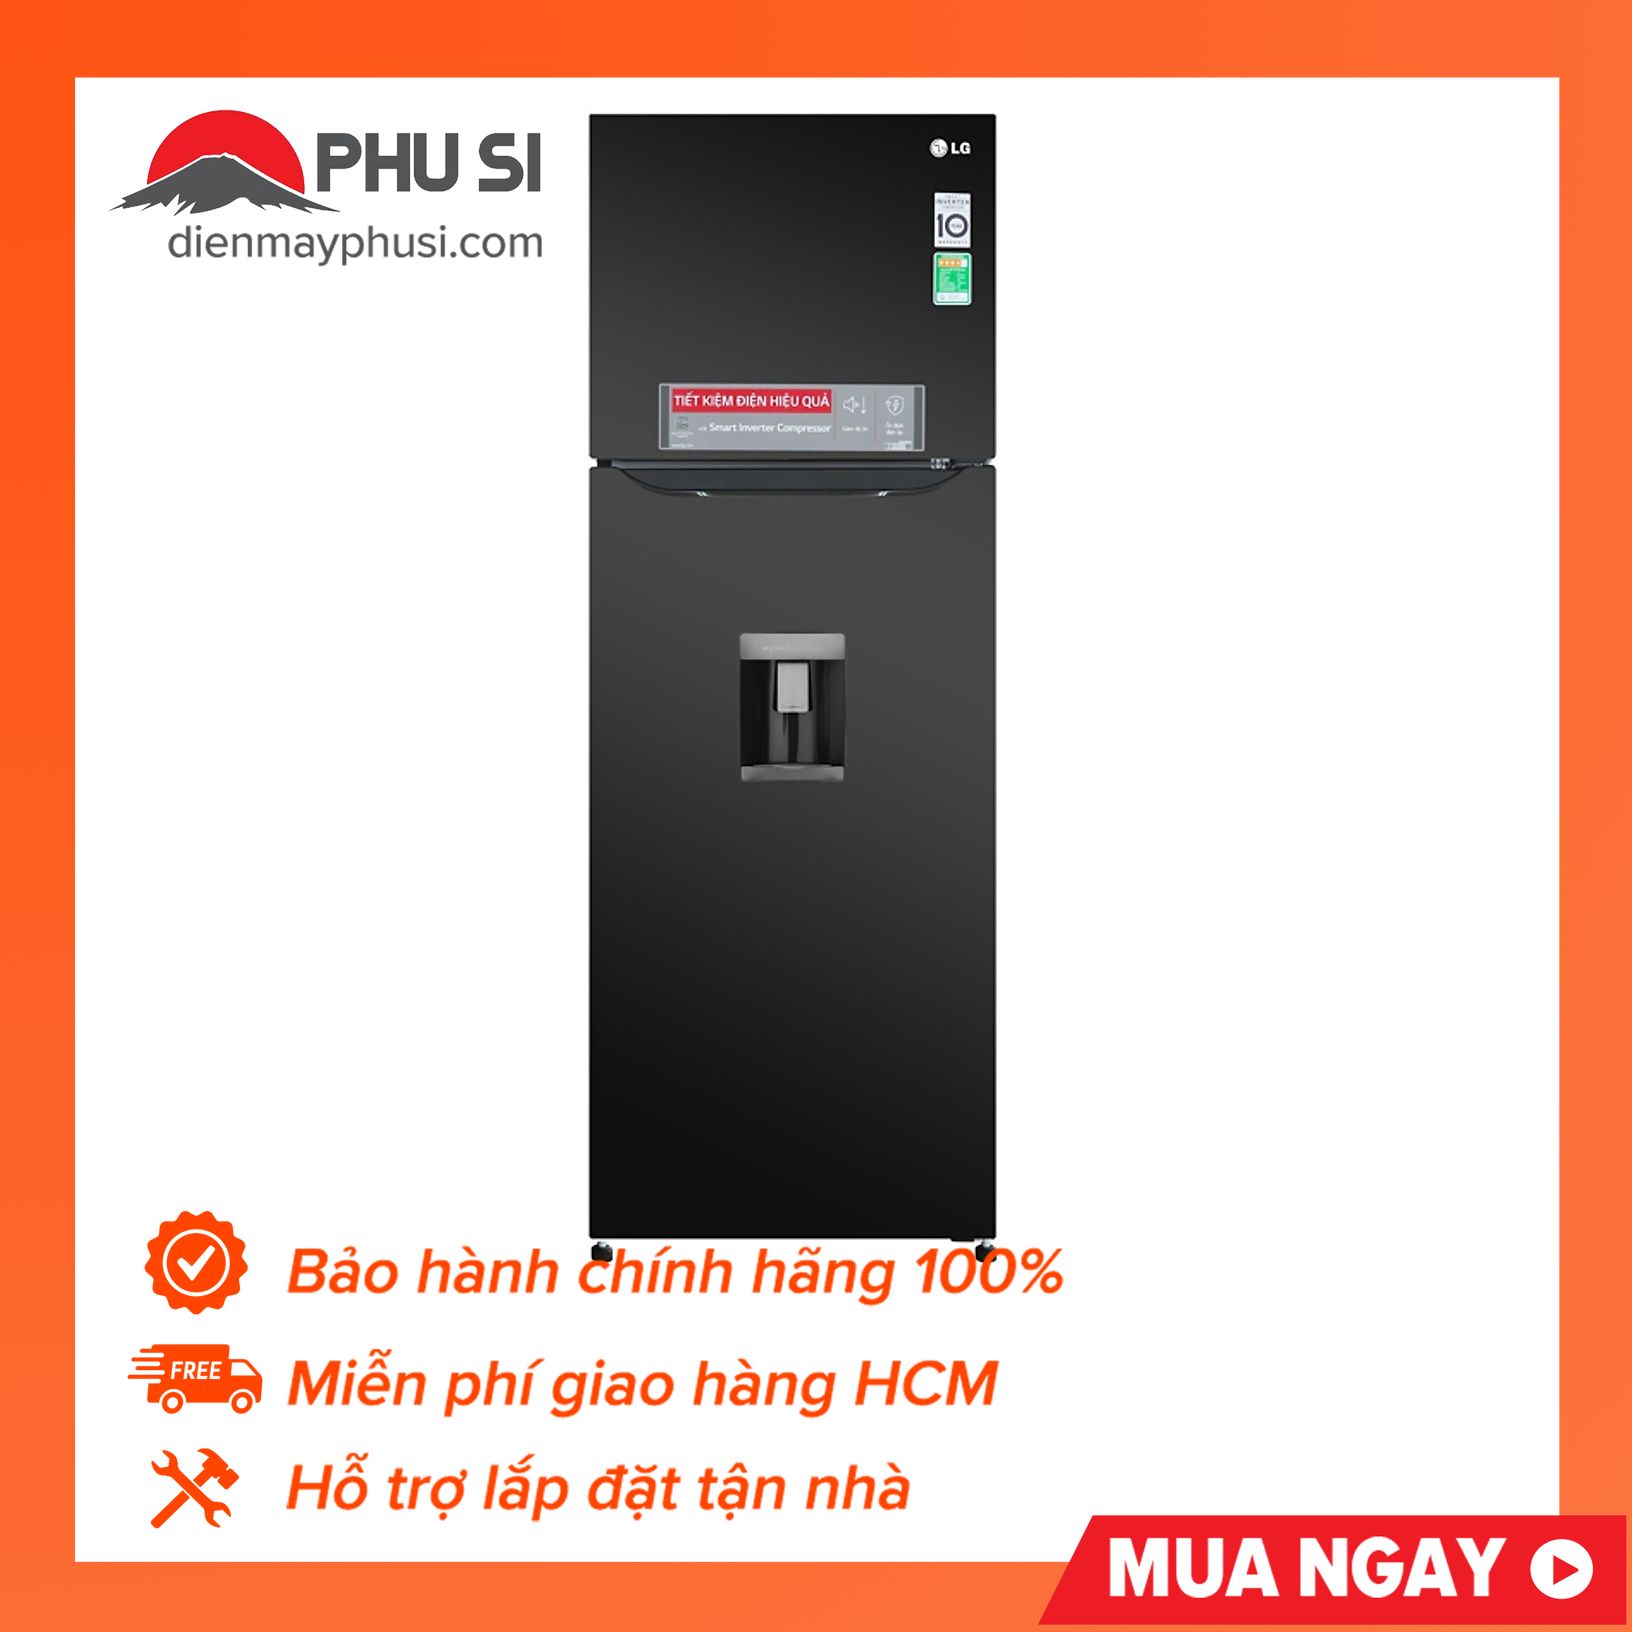 [Trả góp 0%]Tủ lạnh LG Inverter 315 lít GN-D315BL